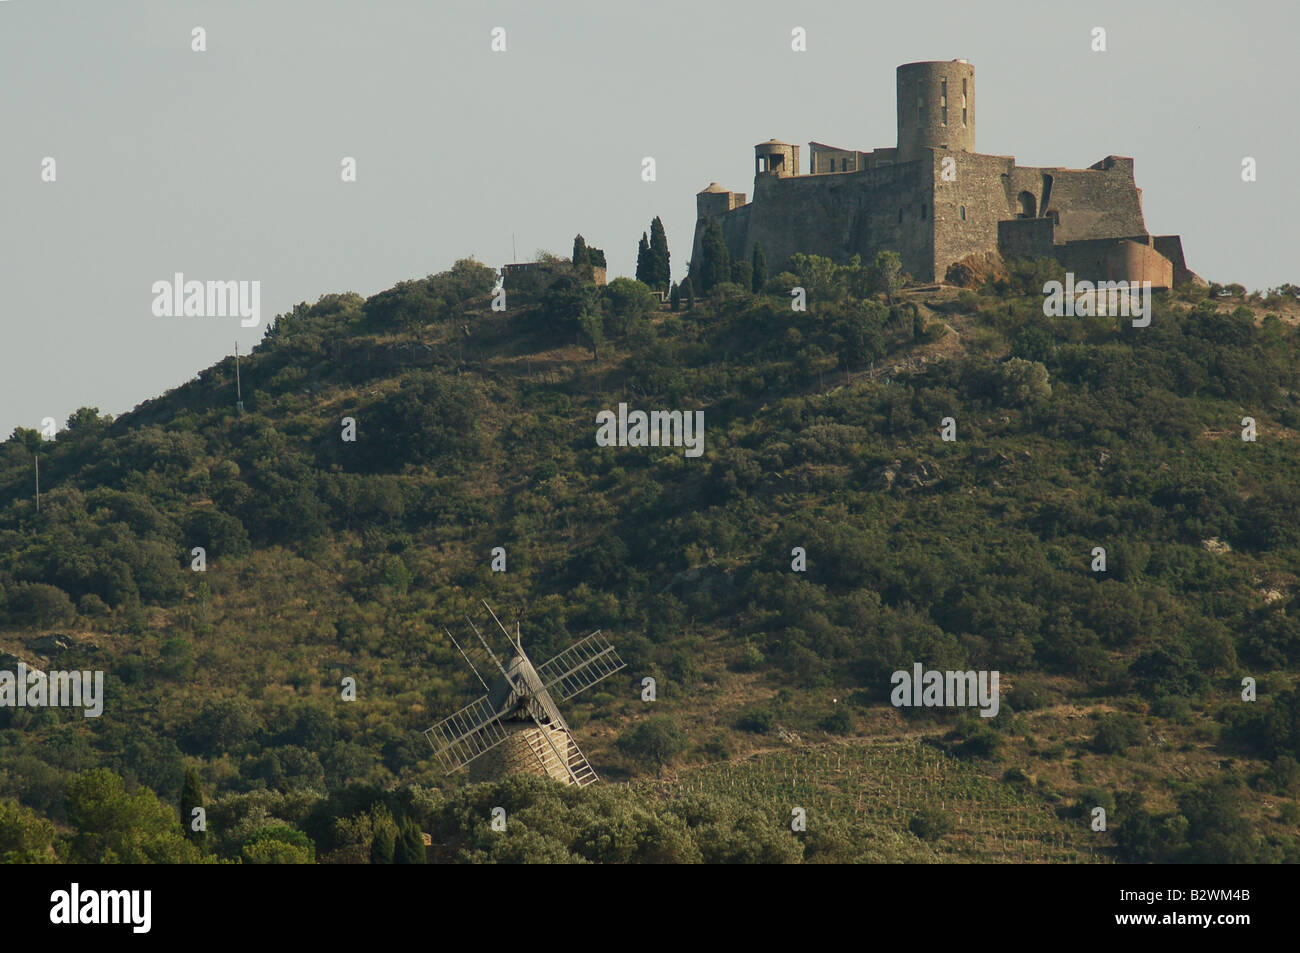 Un petit château perché dans le joli village de pêcheurs de Collioure (sud de la France) Banque D'Images